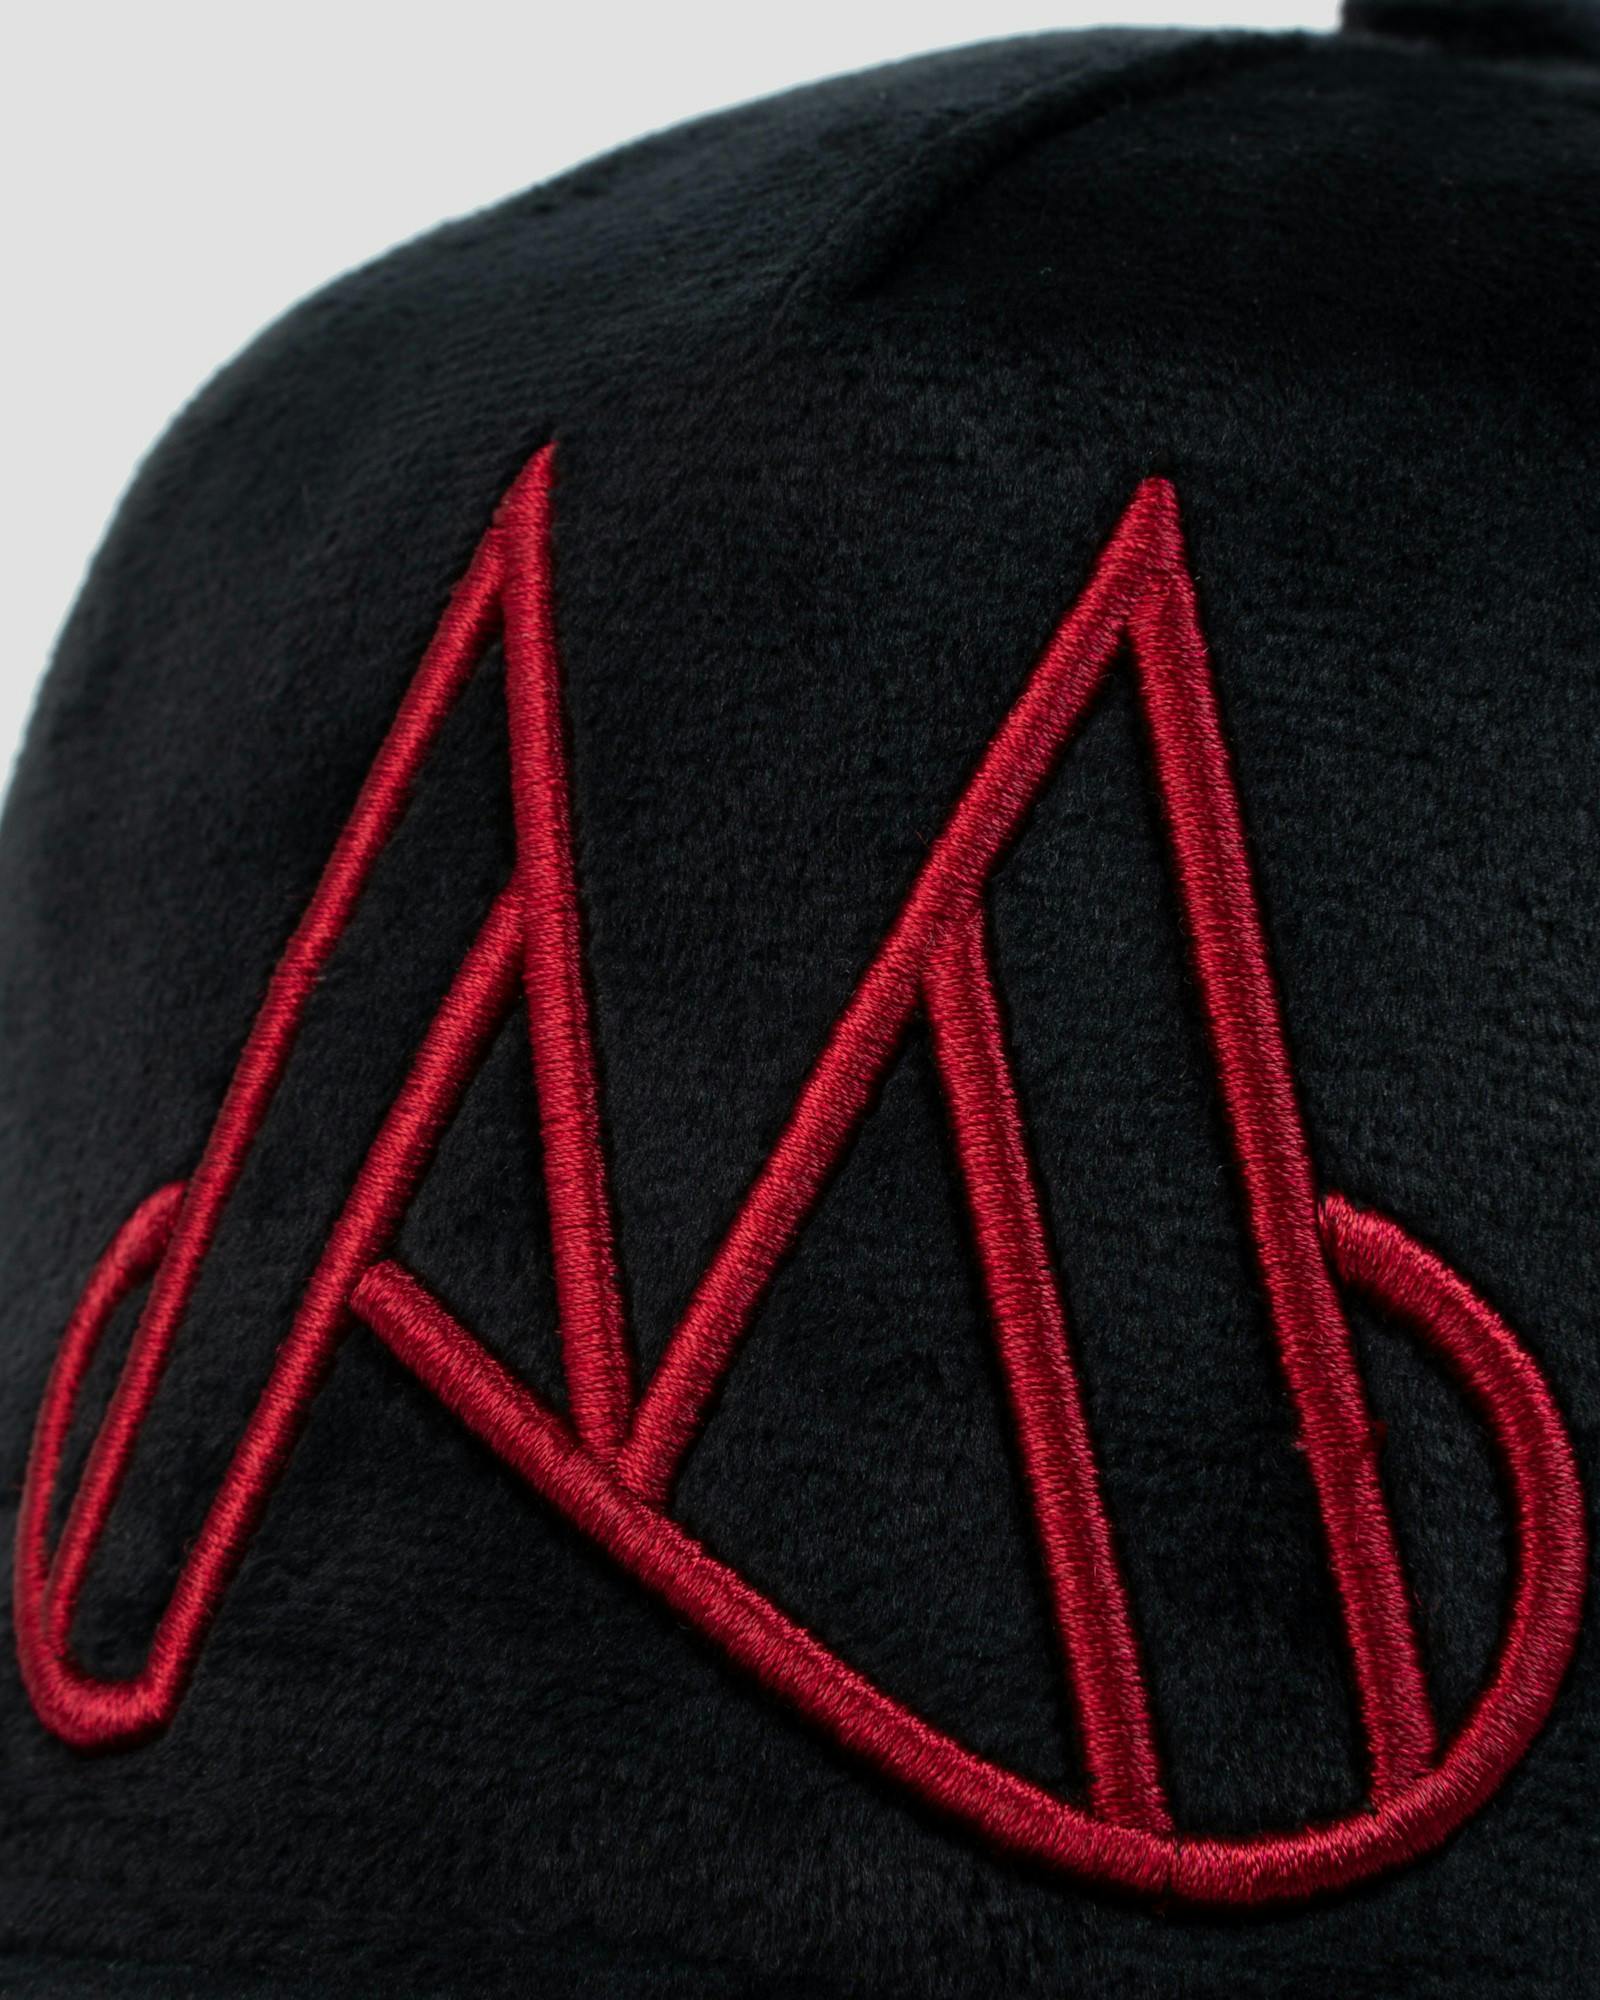 MAGGIORE Unlimited M Logo Black Cap